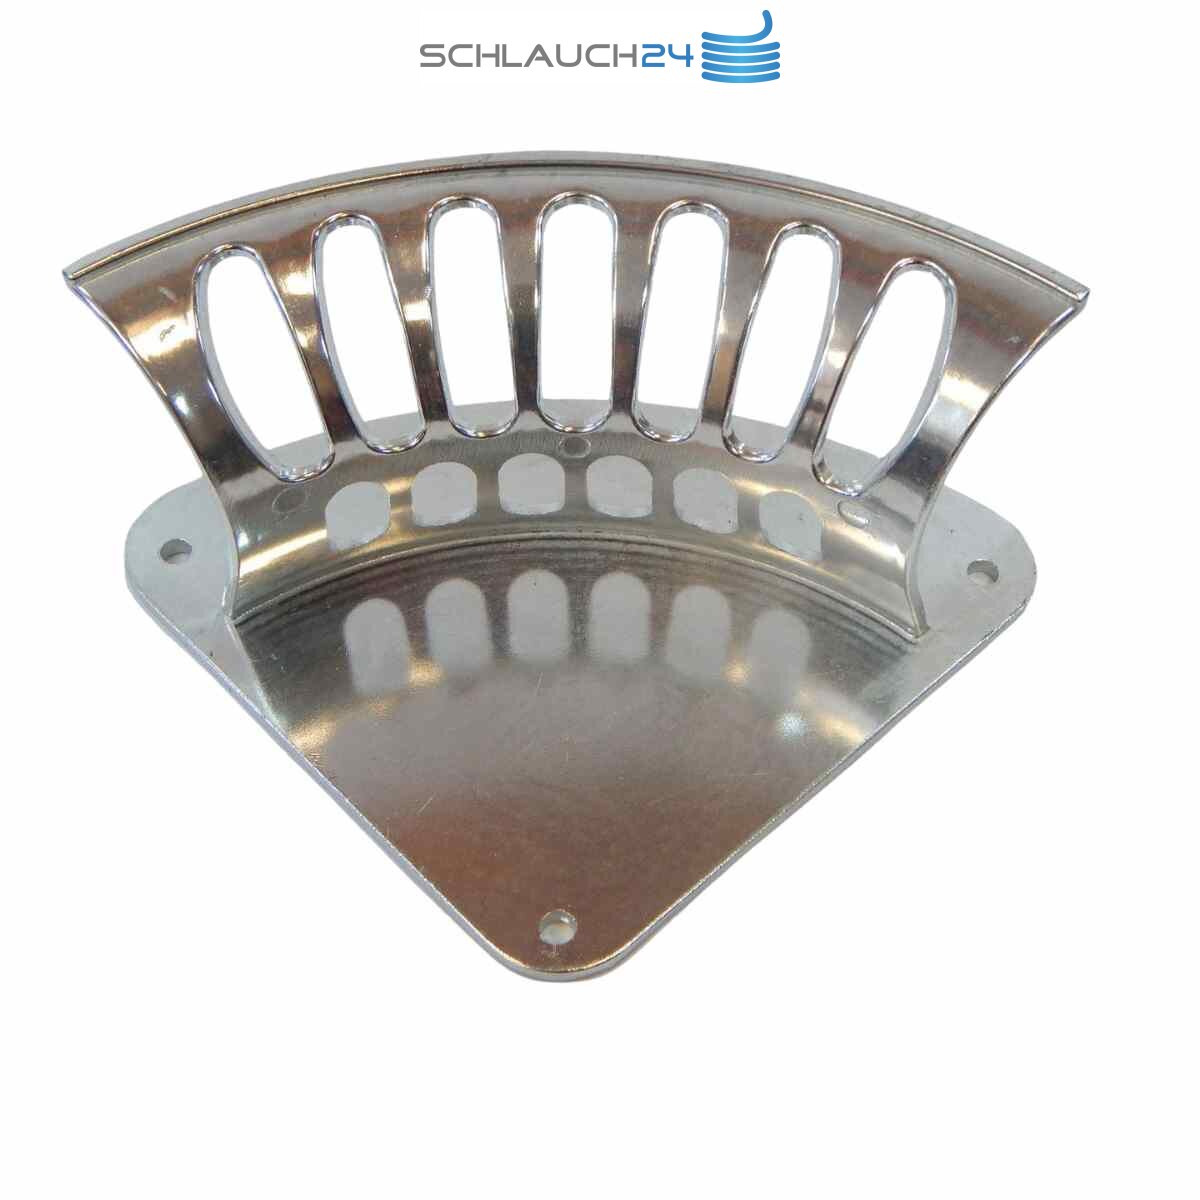 https://schlauch24.de/media/image/product/5813/lg/wandschlauchhalter-schlauchhalter-gartenschlauchhalter-kabelhalter-wandhalter.jpg